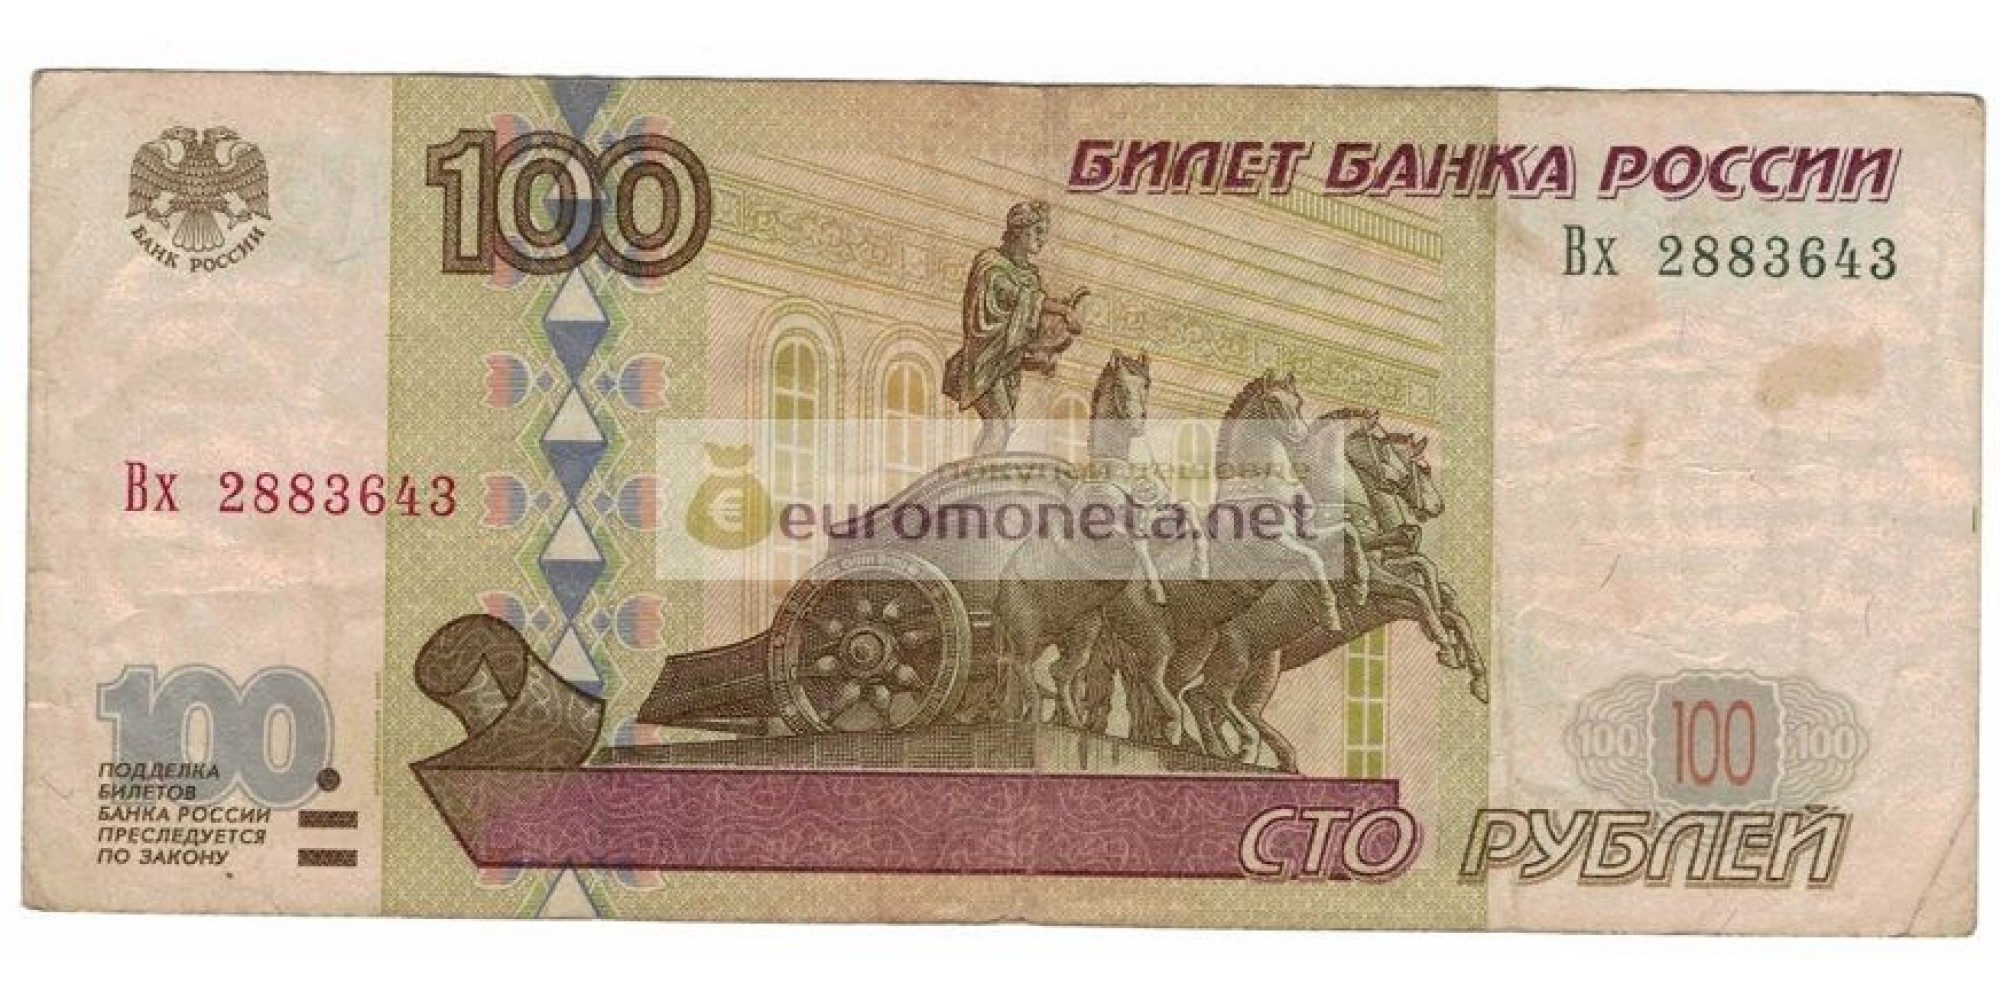 Россия 100 рублей 1997 год модификация 2001 год серия Вх 2883643